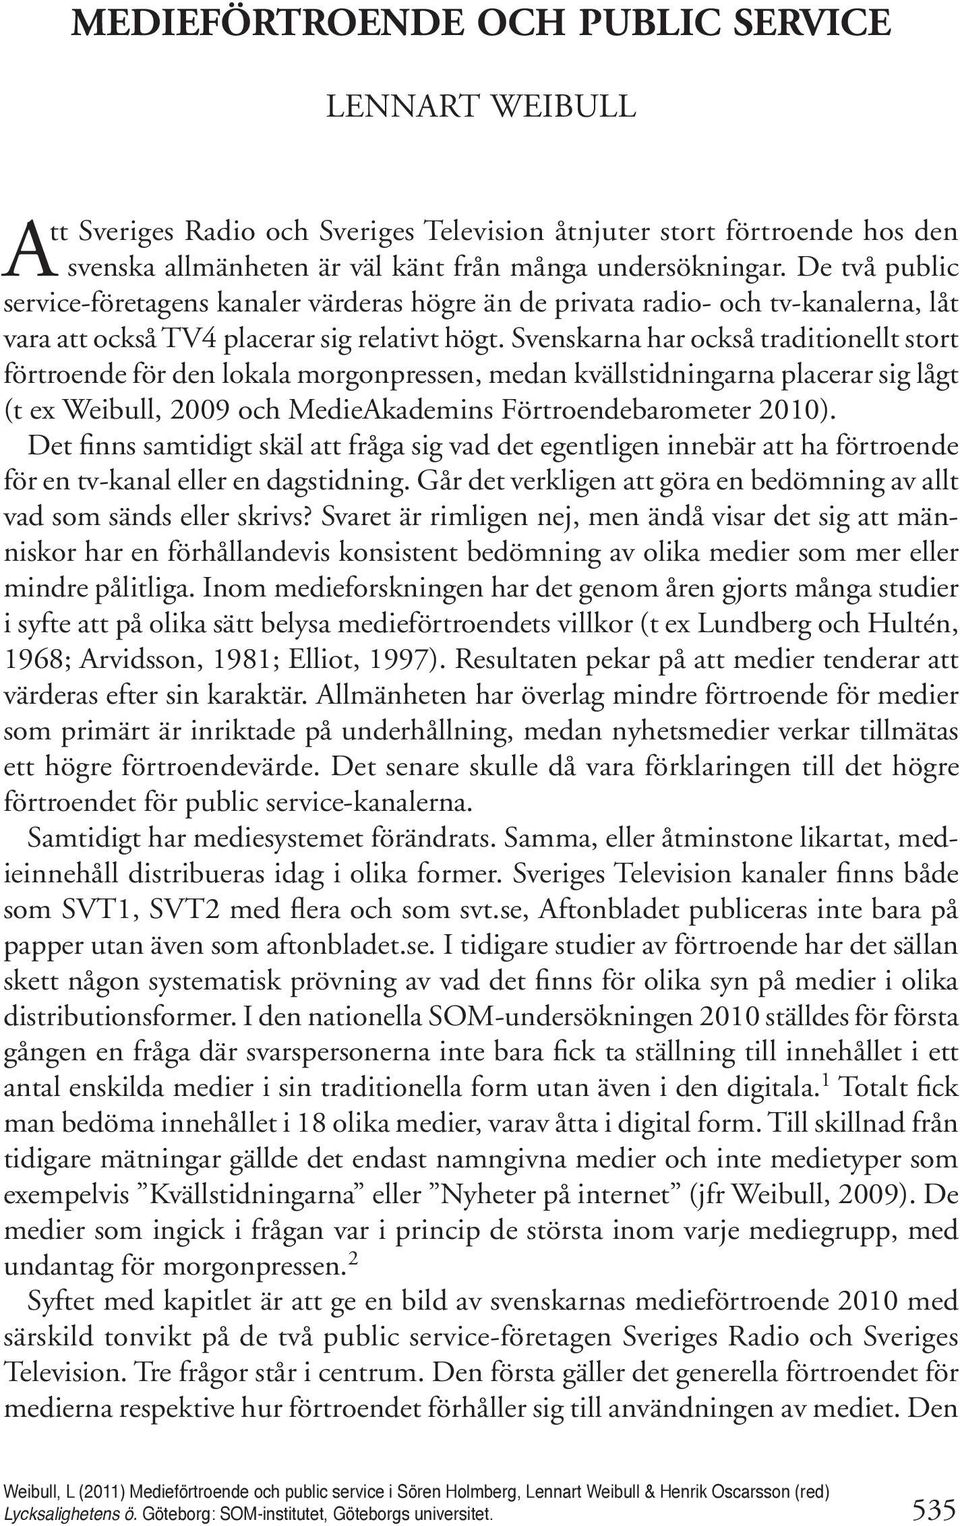 Svenskarna har också traditionellt stort förtroende för den lokala morgonpressen, medan kvällstidningarna placerar sig lågt (t ex Weibull, 2009 och MedieAkademins Förtroendebarometer 2010).